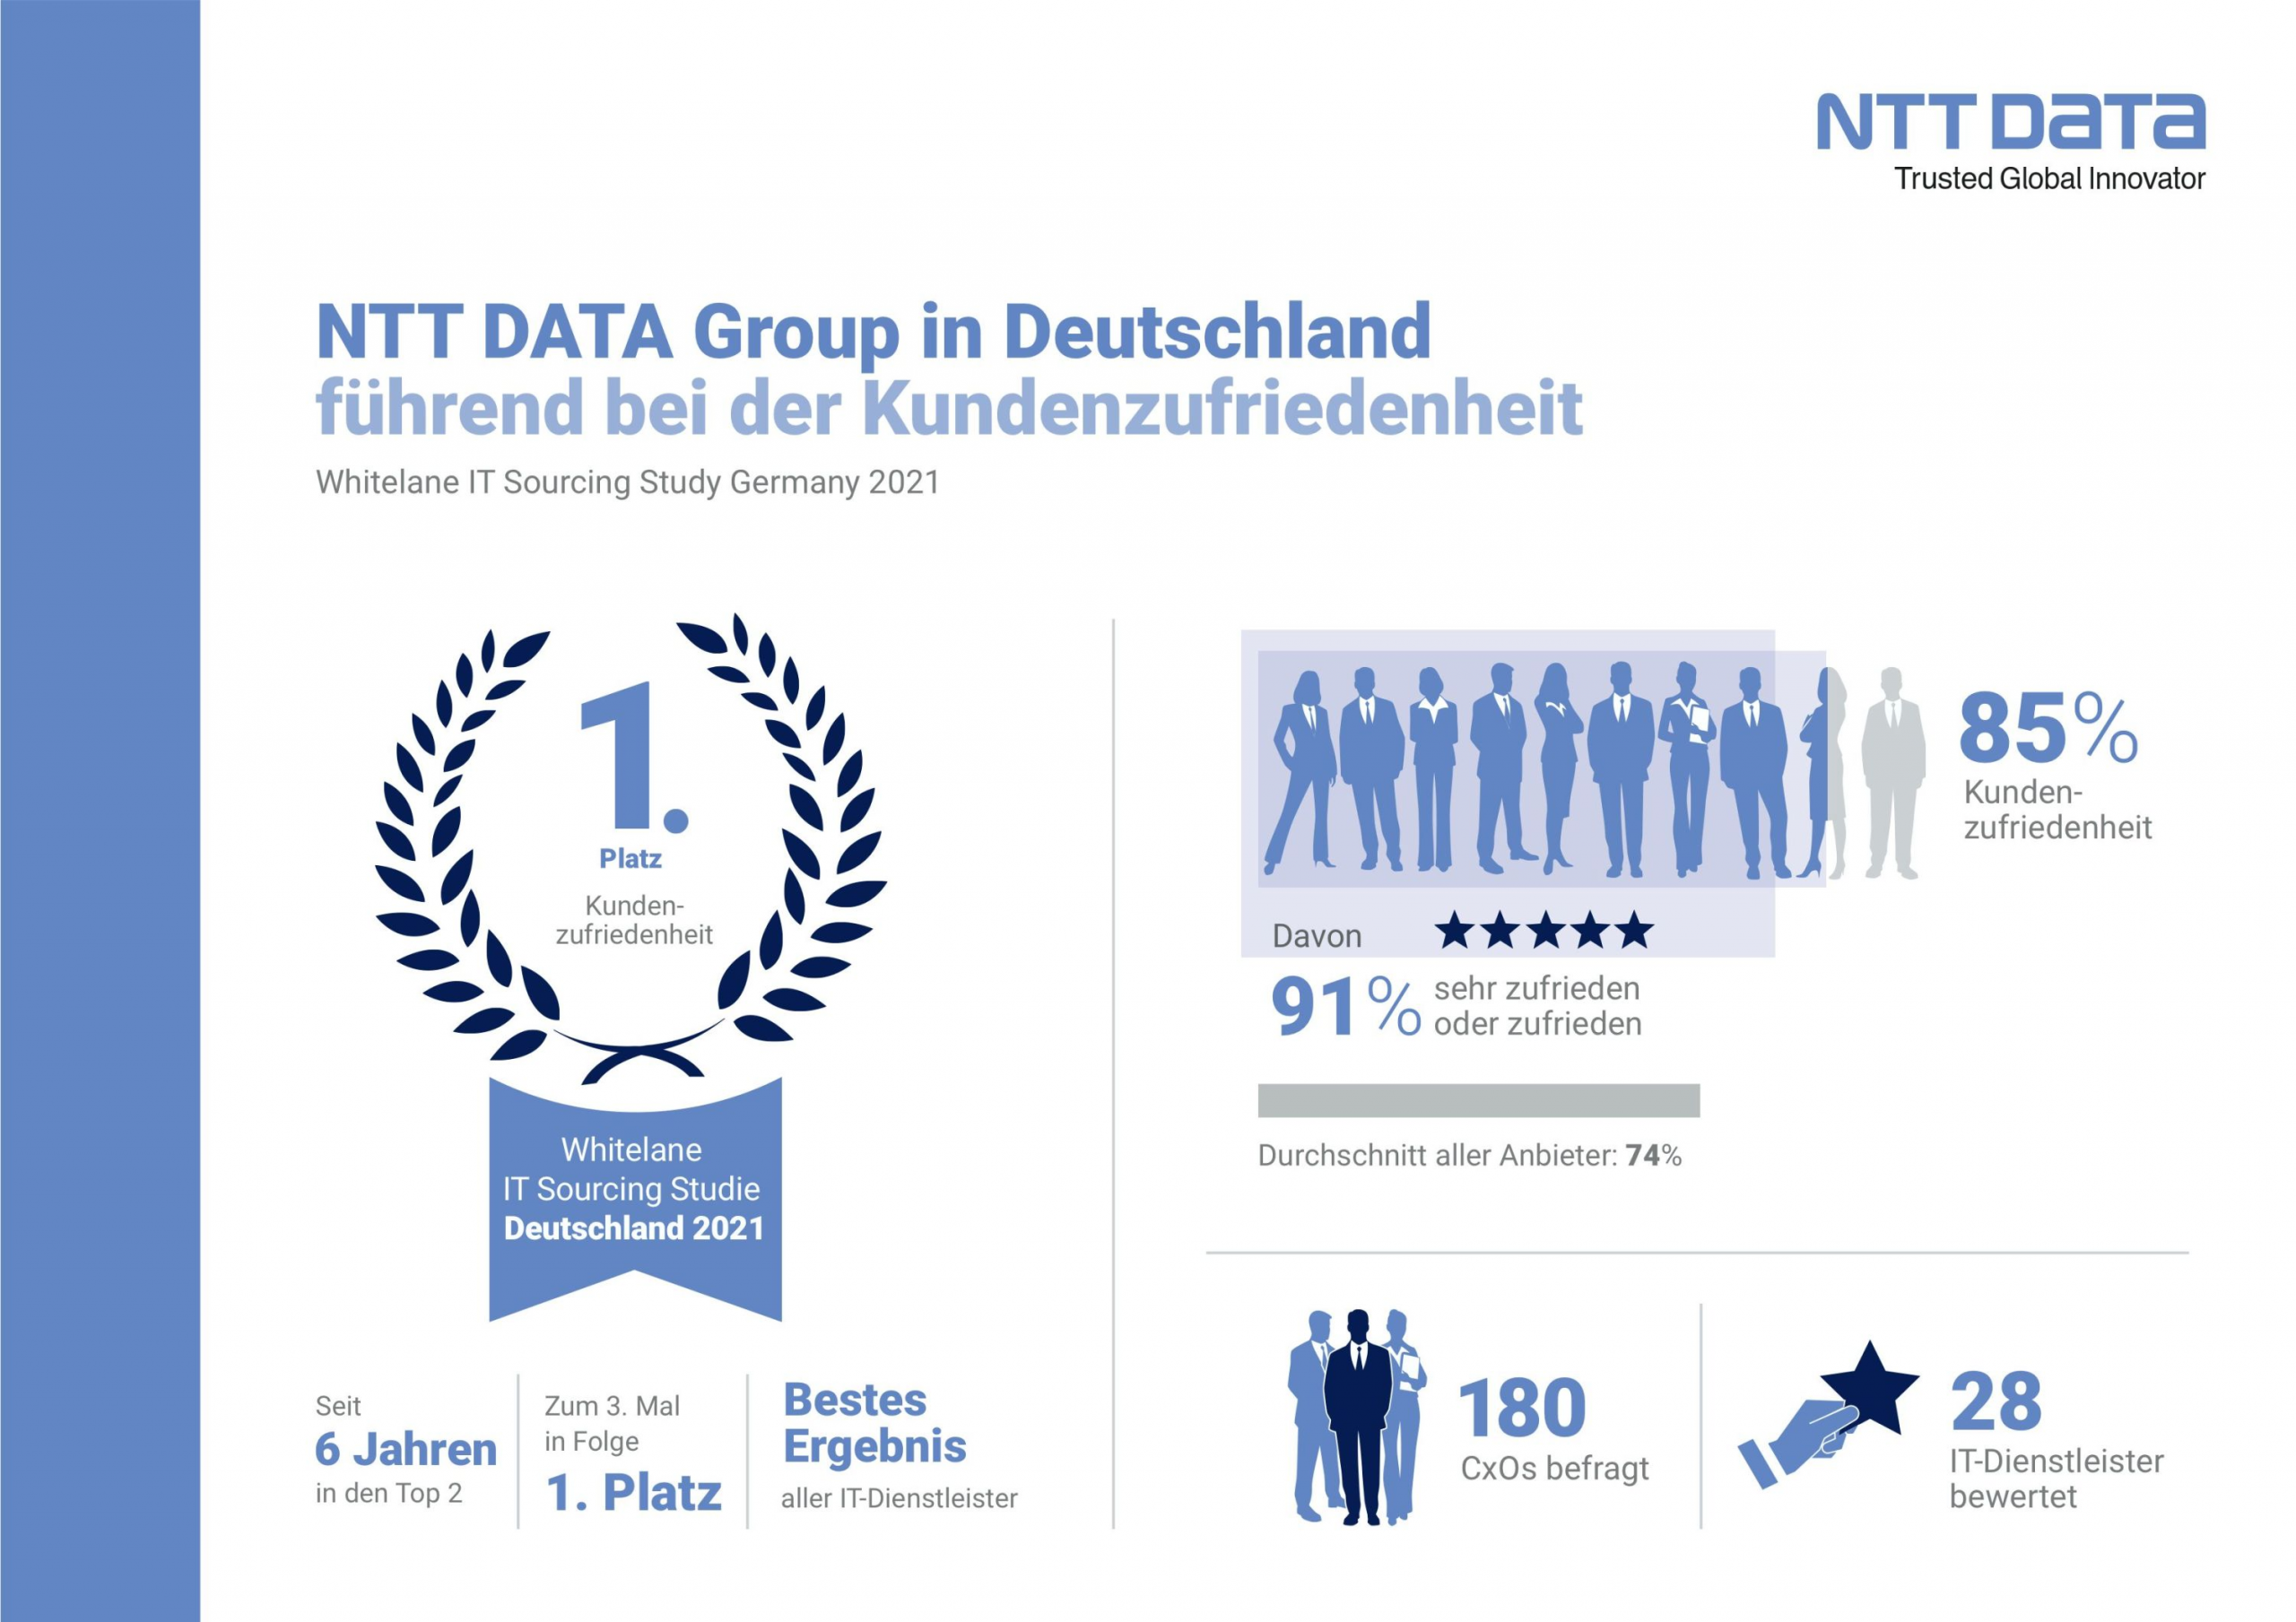 Zum dritten Mal in Folge: NTT DATA auf Platz 1 bei Kundenzufriedenheit